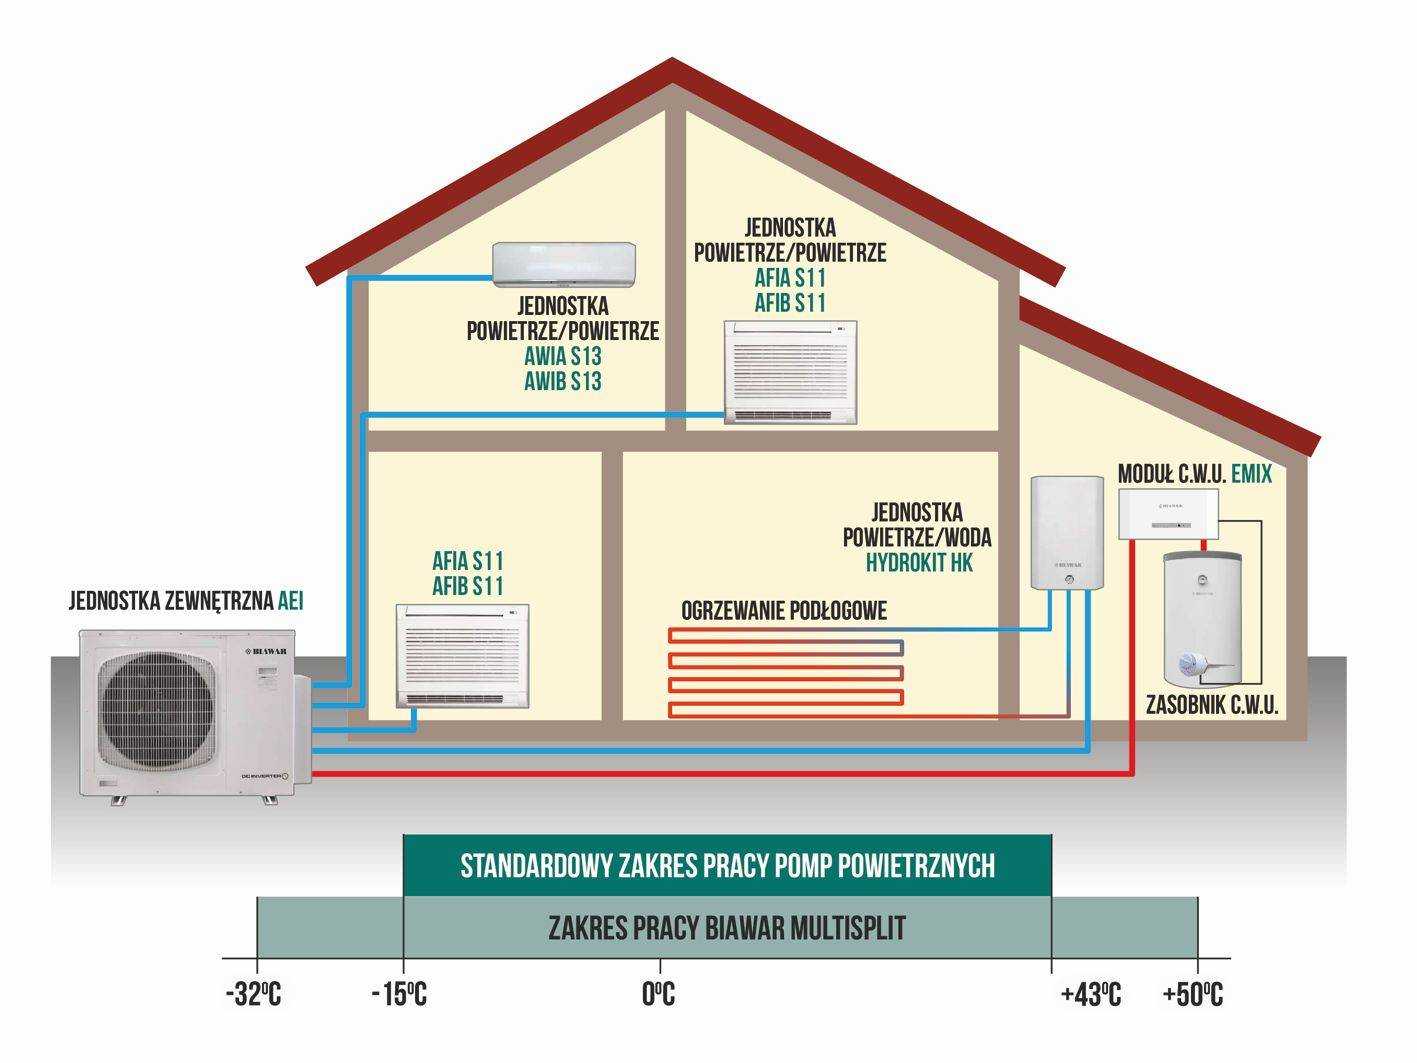 Тепловой насос - система, которая используется для отопления жилых помещений.